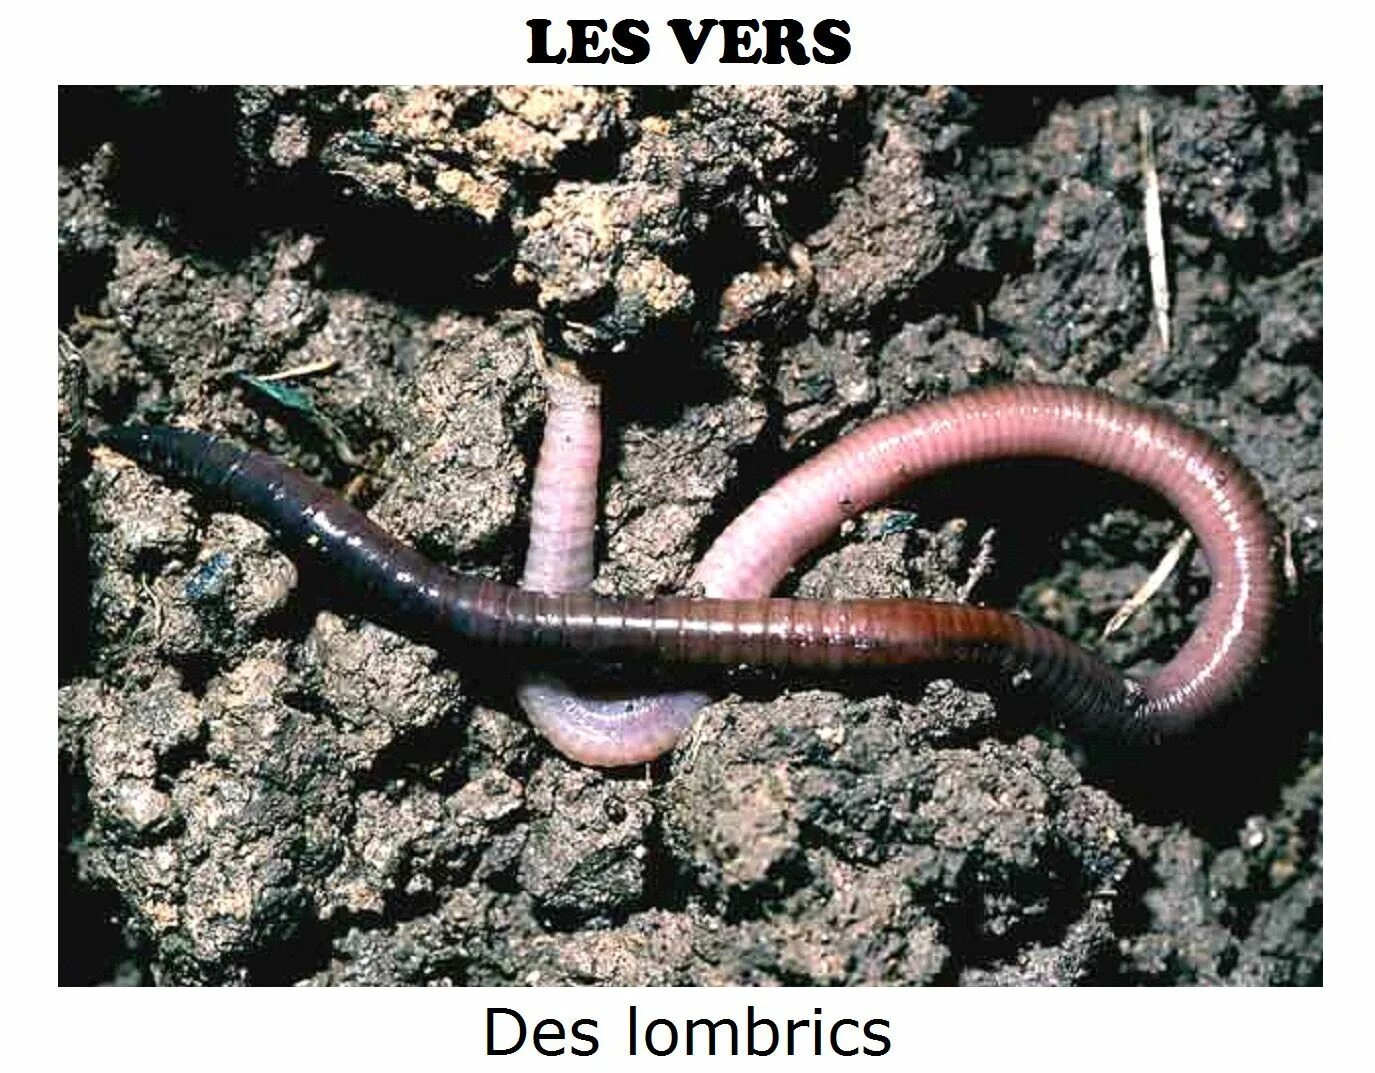 Червь Земляной (Lumbricus terrestris). Малощетинковые дождевой червь. Дождевые черви среда обитания. Дождевые черви класс Малощетинковые. Первые кольчатые черви